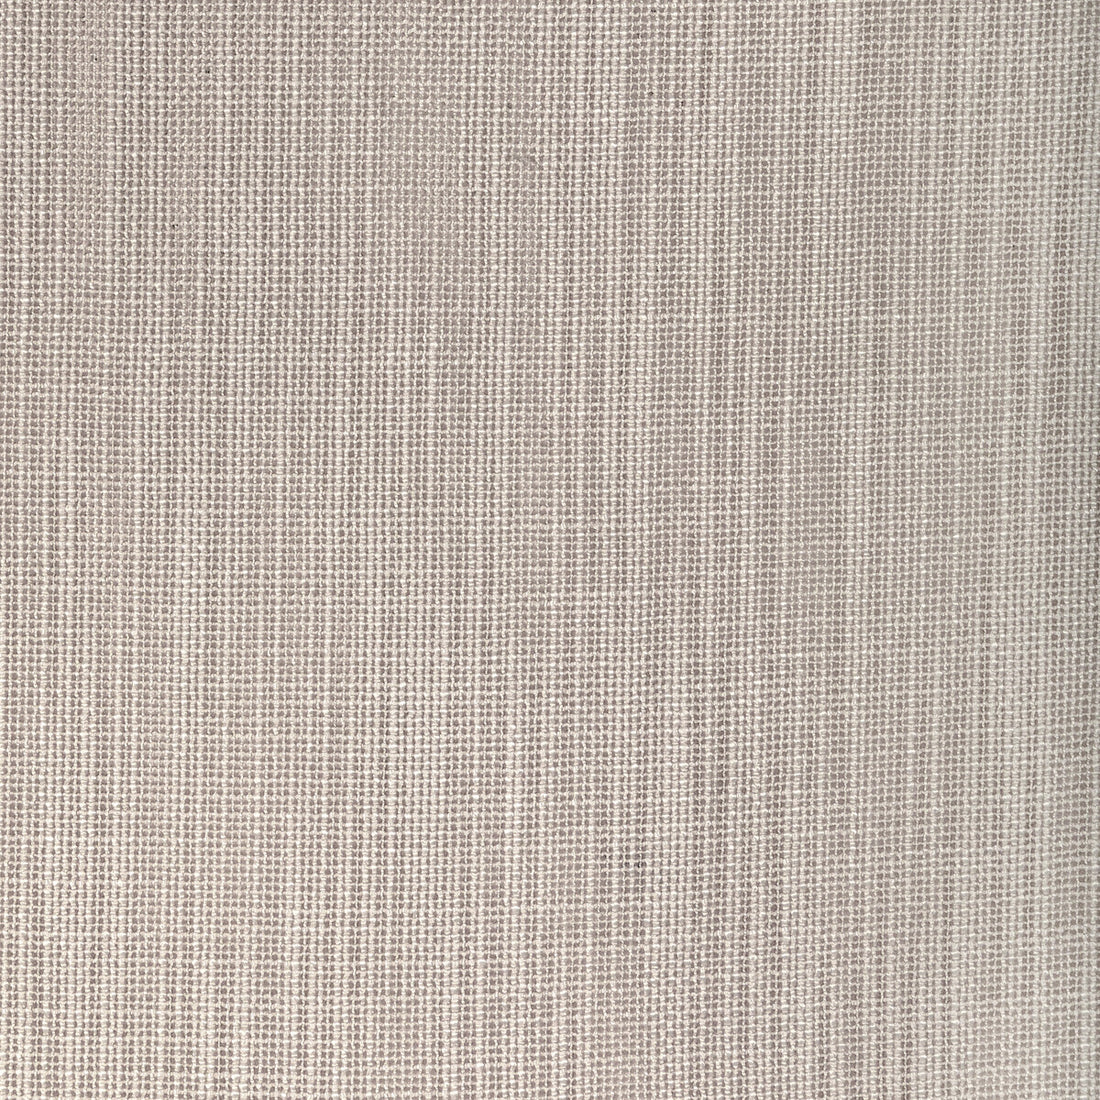 Kravet Design fabric in 4940-106 color - pattern 4940.106.0 - by Kravet Basics